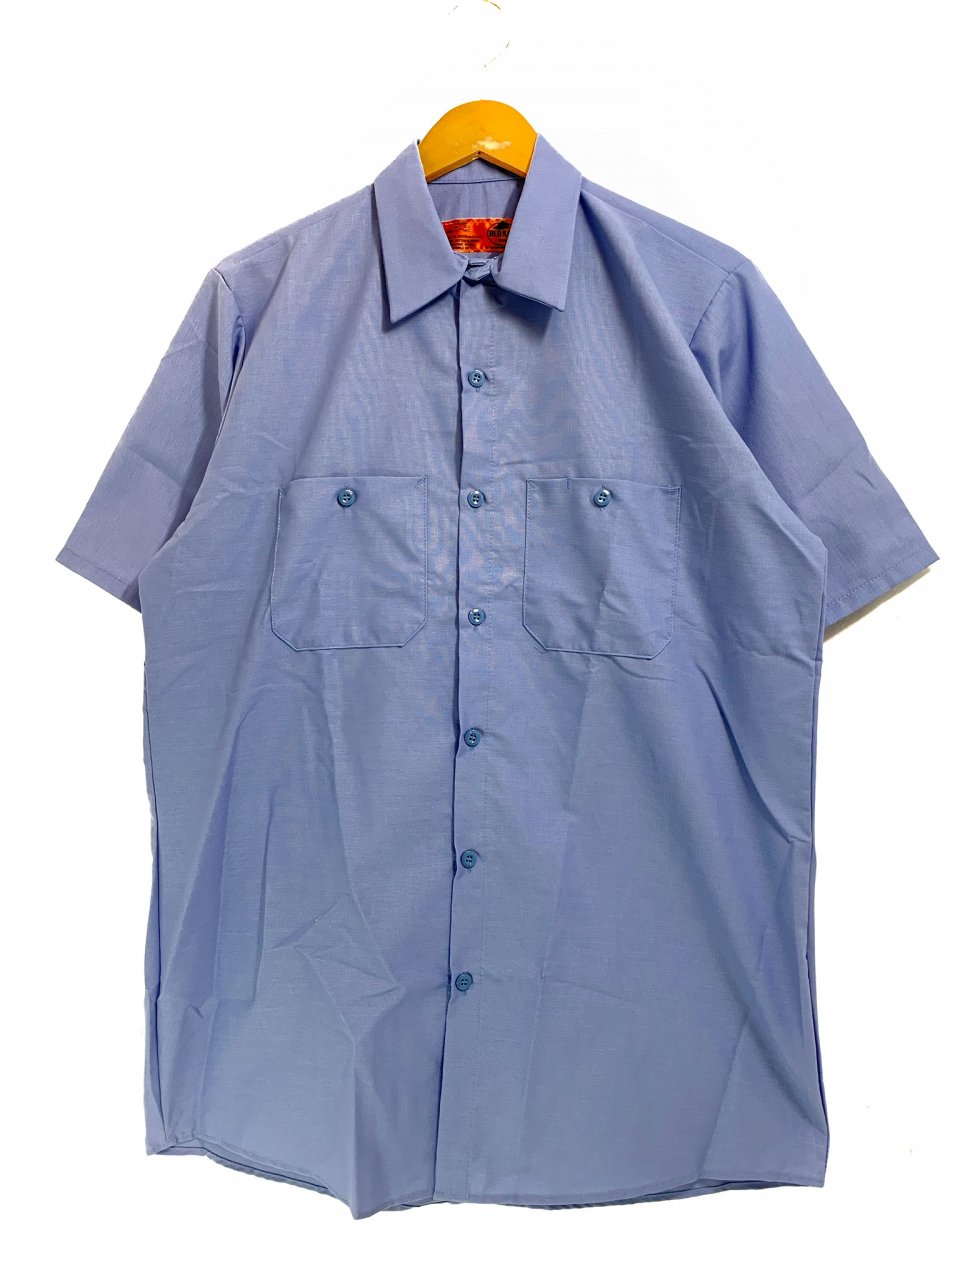 新品 US企画 REDKAP S/S Industrial Work Shirt (LIGHT BLUE) レッドキャップ ワークシャツ 半袖 シャツ  水色 ライトブルー レッドカップ - NEWJOKE ONLINE STORE